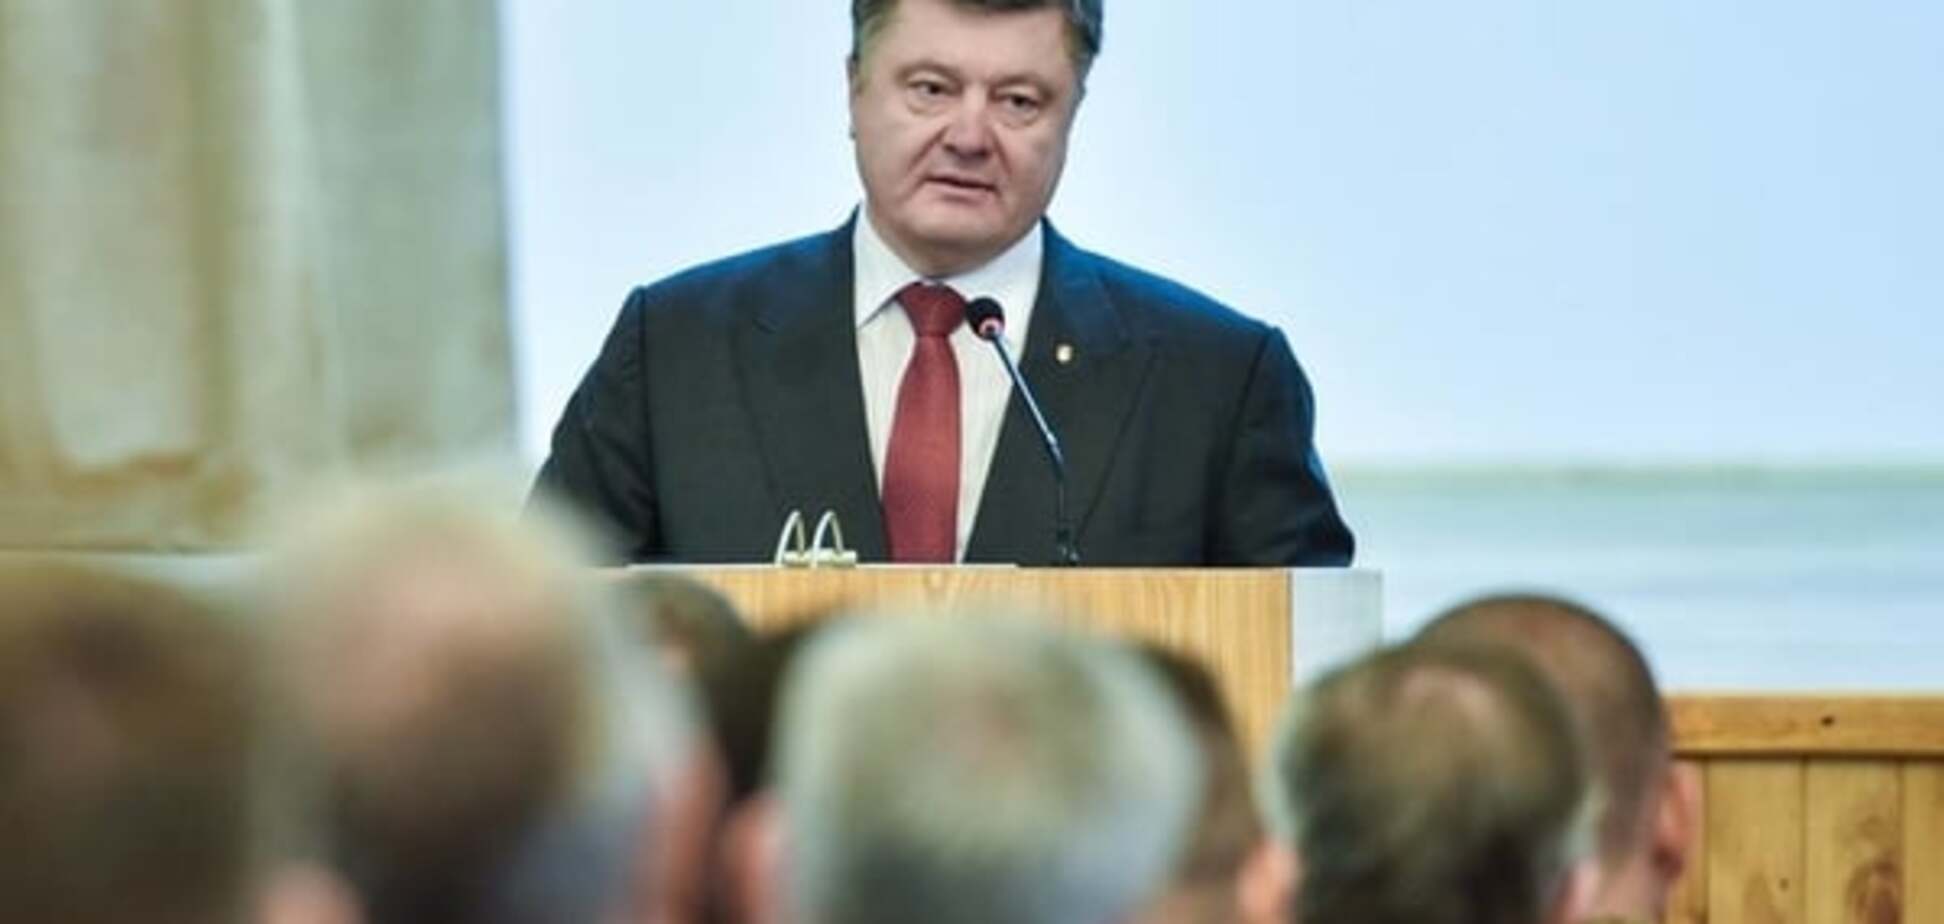 Порошенко подчеркнул абсурдность даты 23 февраля для украинцев